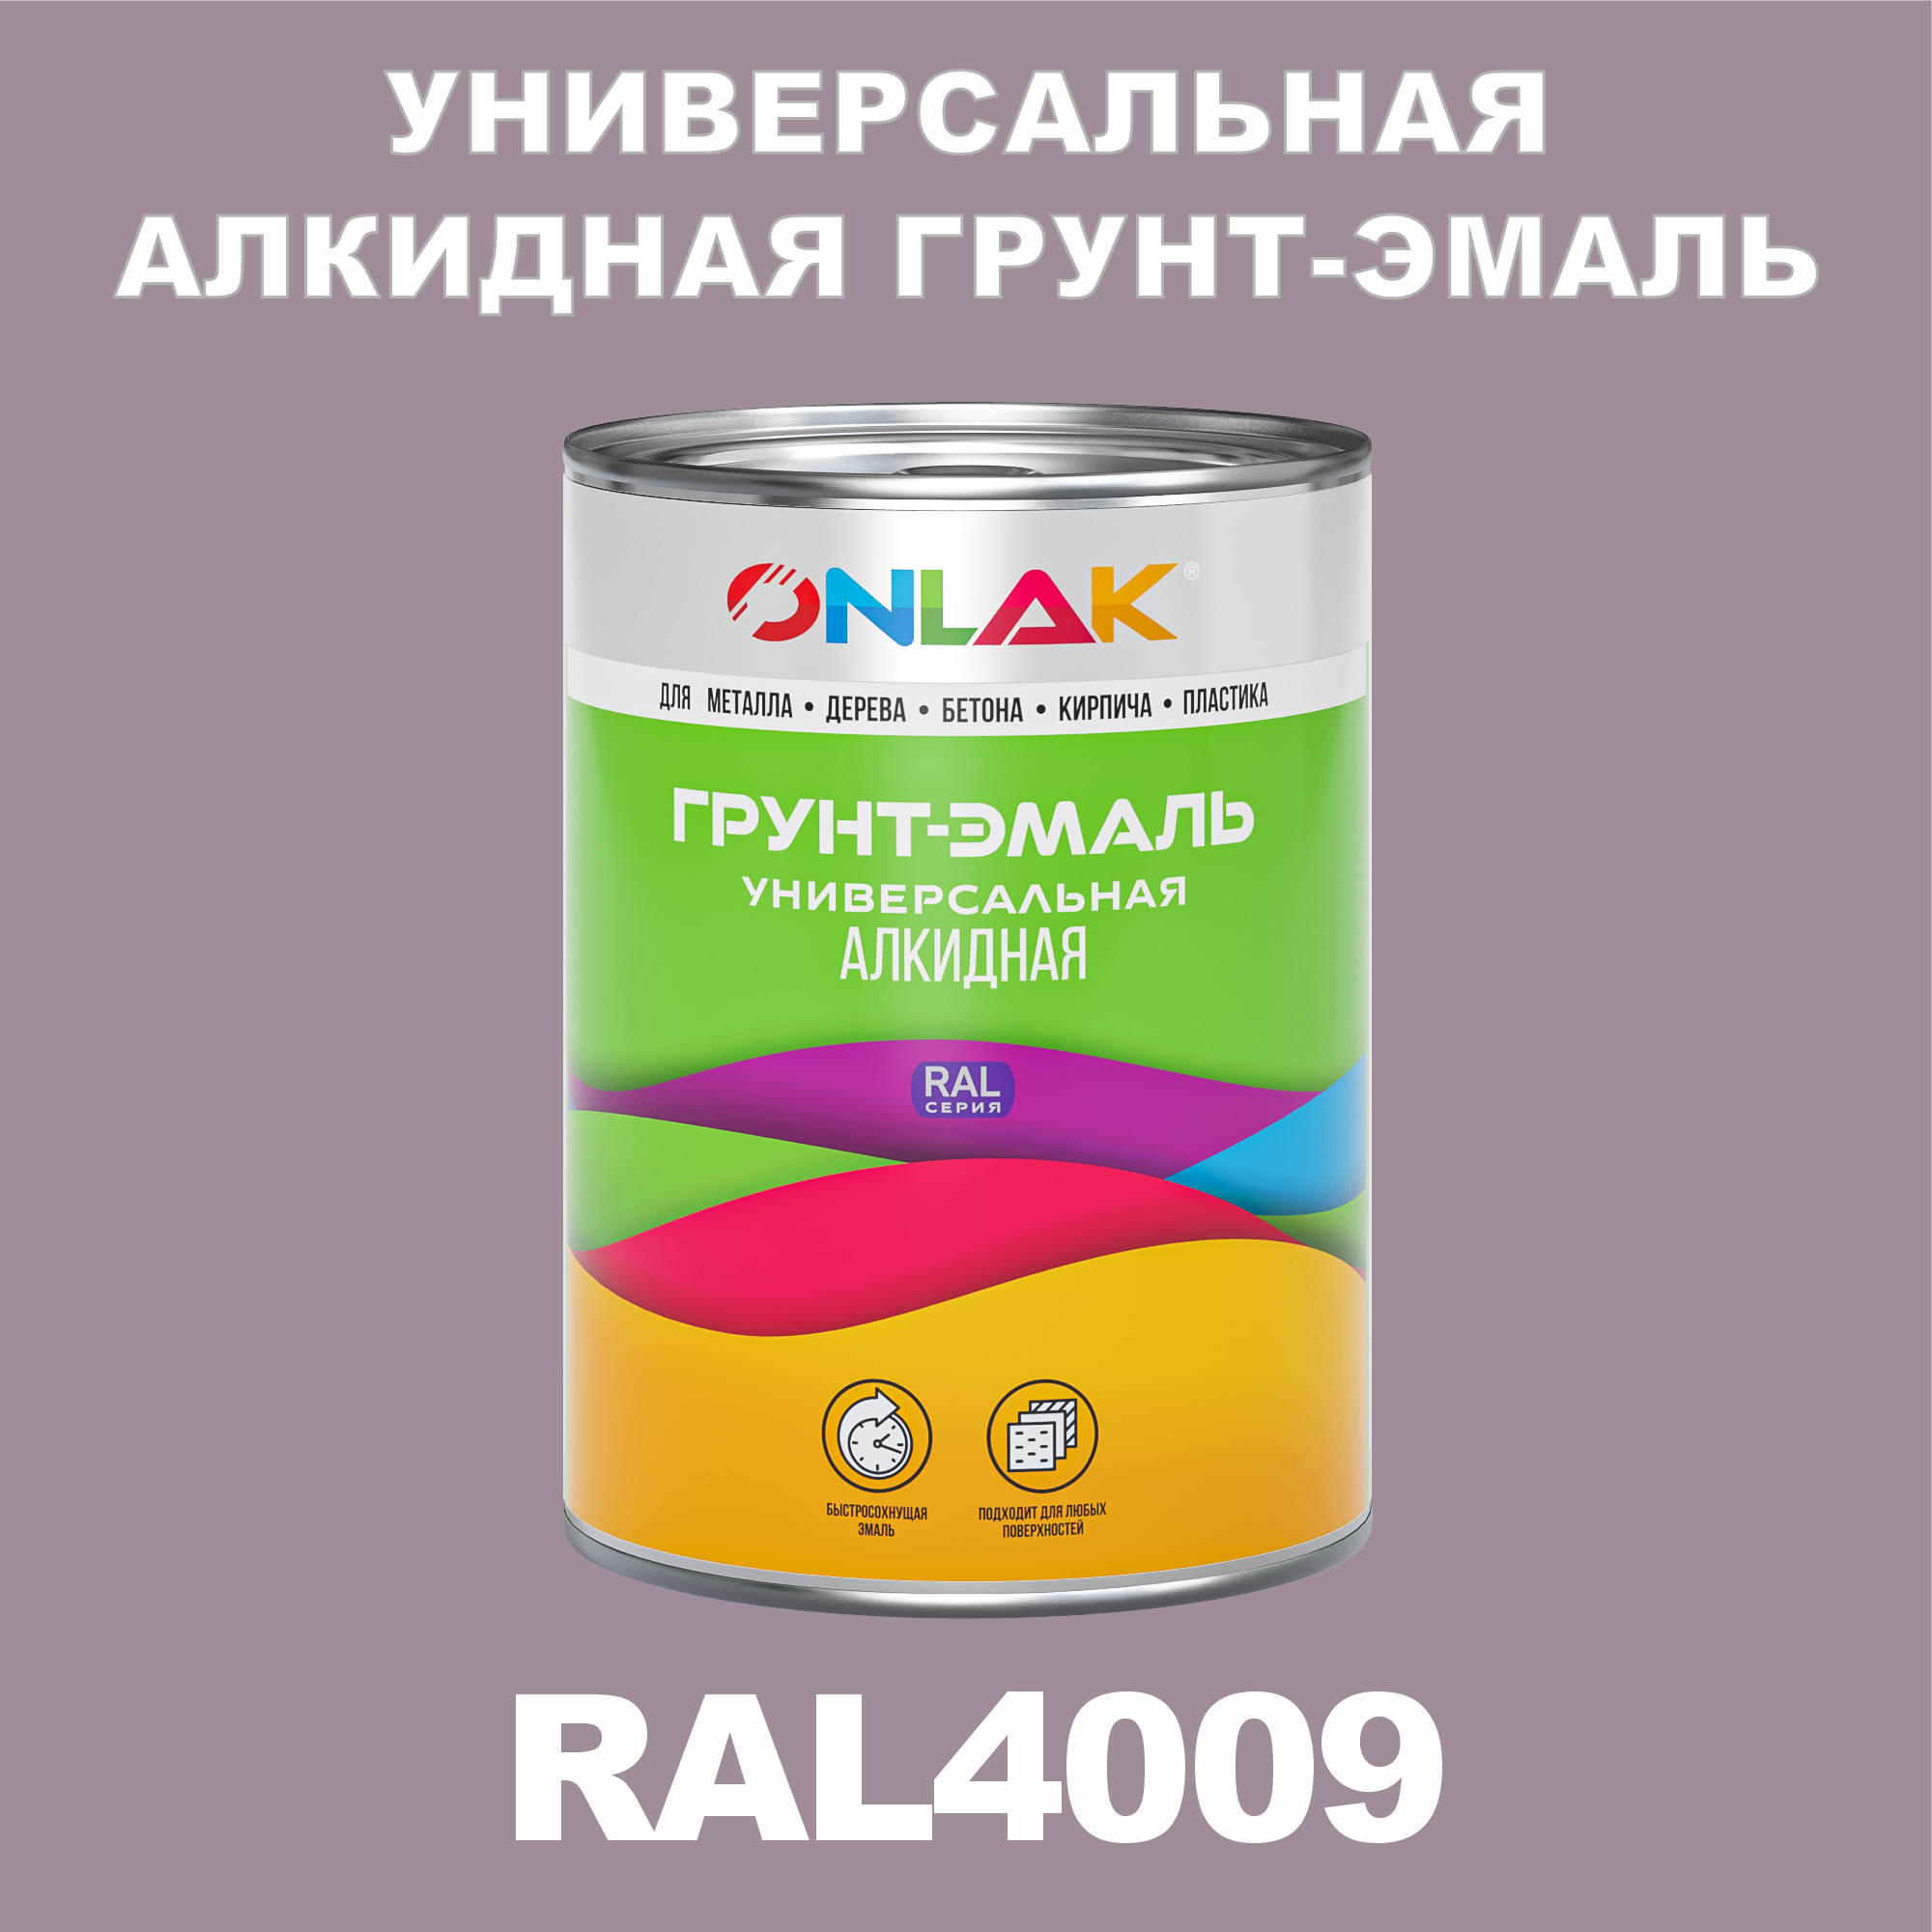 Грунт-эмаль ONLAK 1К RAL4009 антикоррозионная алкидная по металлу по ржавчине 1 кг антикоррозионная грунт эмаль onlak ral 4012 фиолетовый 715 мл